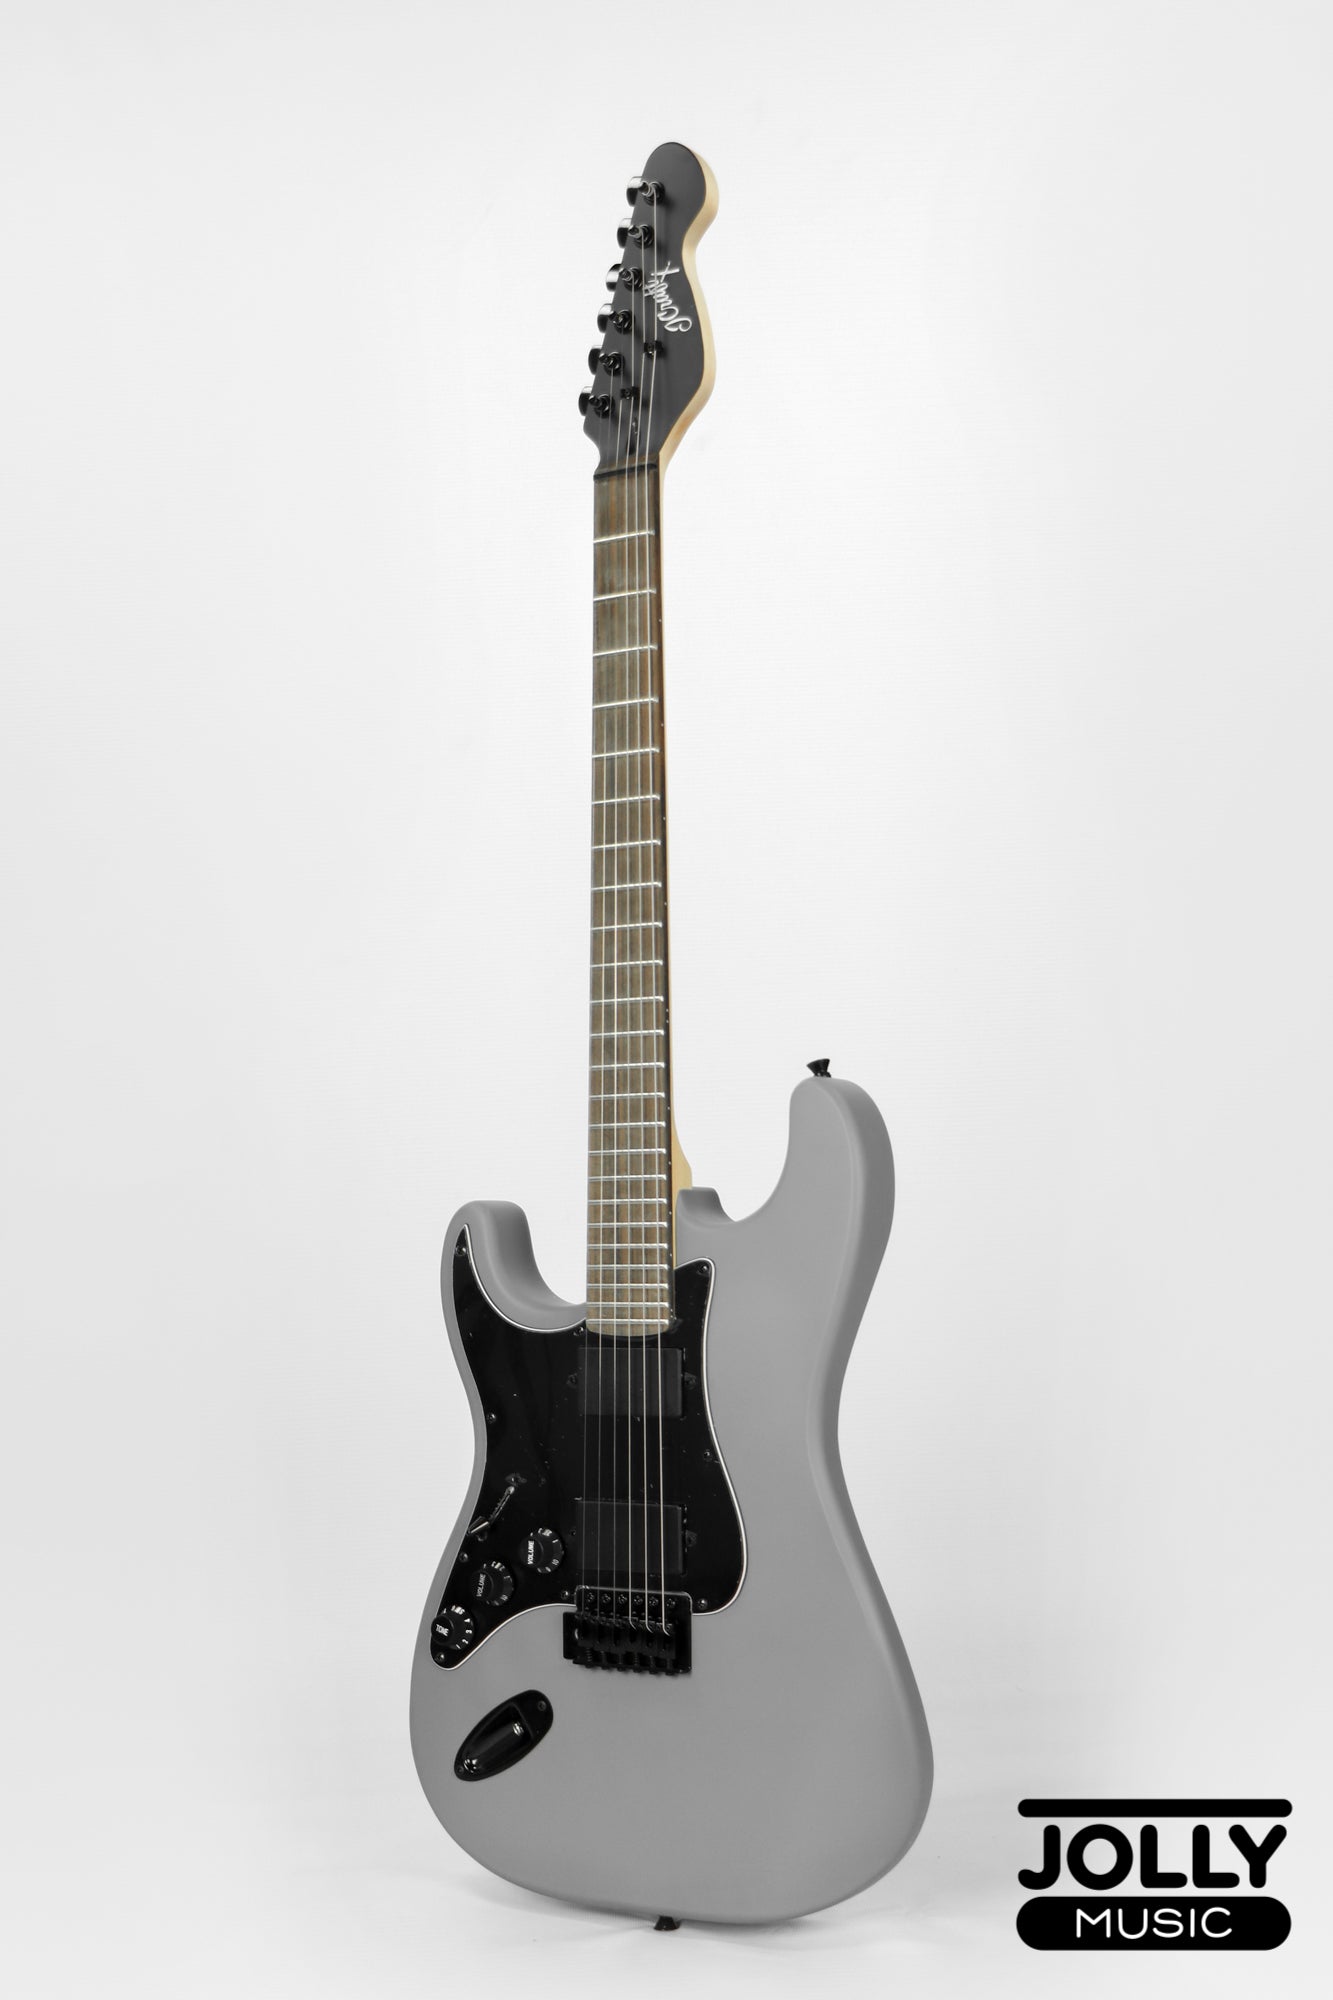 JCraft X Series LSX-1 LEFT HAND HH Modern S-Style Electric Guitar - Gunmetal